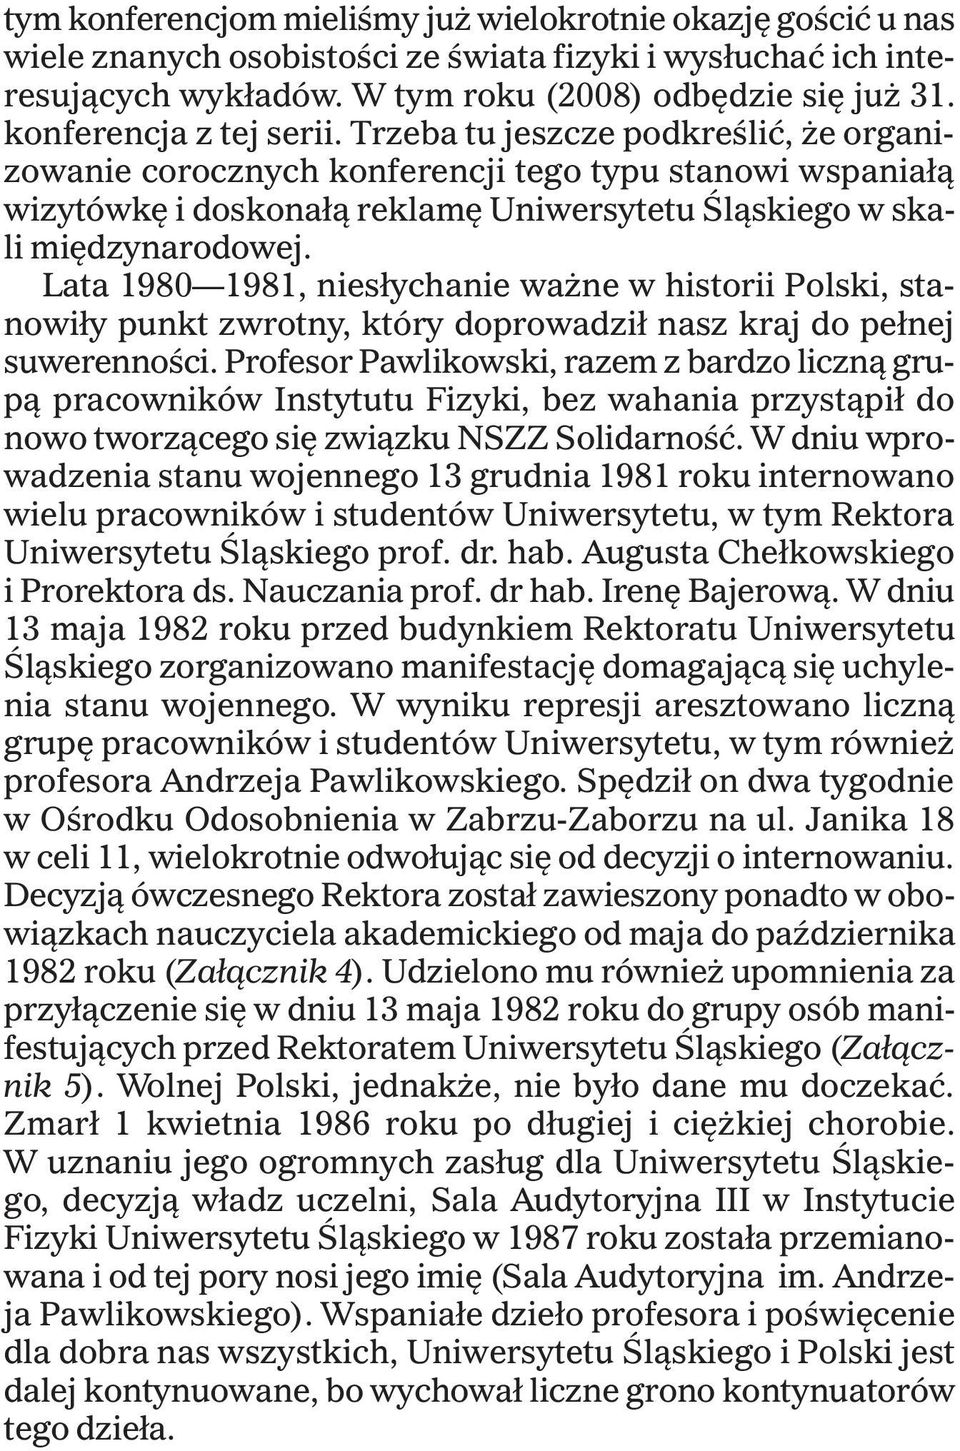 Lata 1980 1981, nies³ychanie wa ne w historii Polski, stanowi³y punkt zwrotny, który doprowadzi³ nasz kraj do pe³nej suwerennoœci.